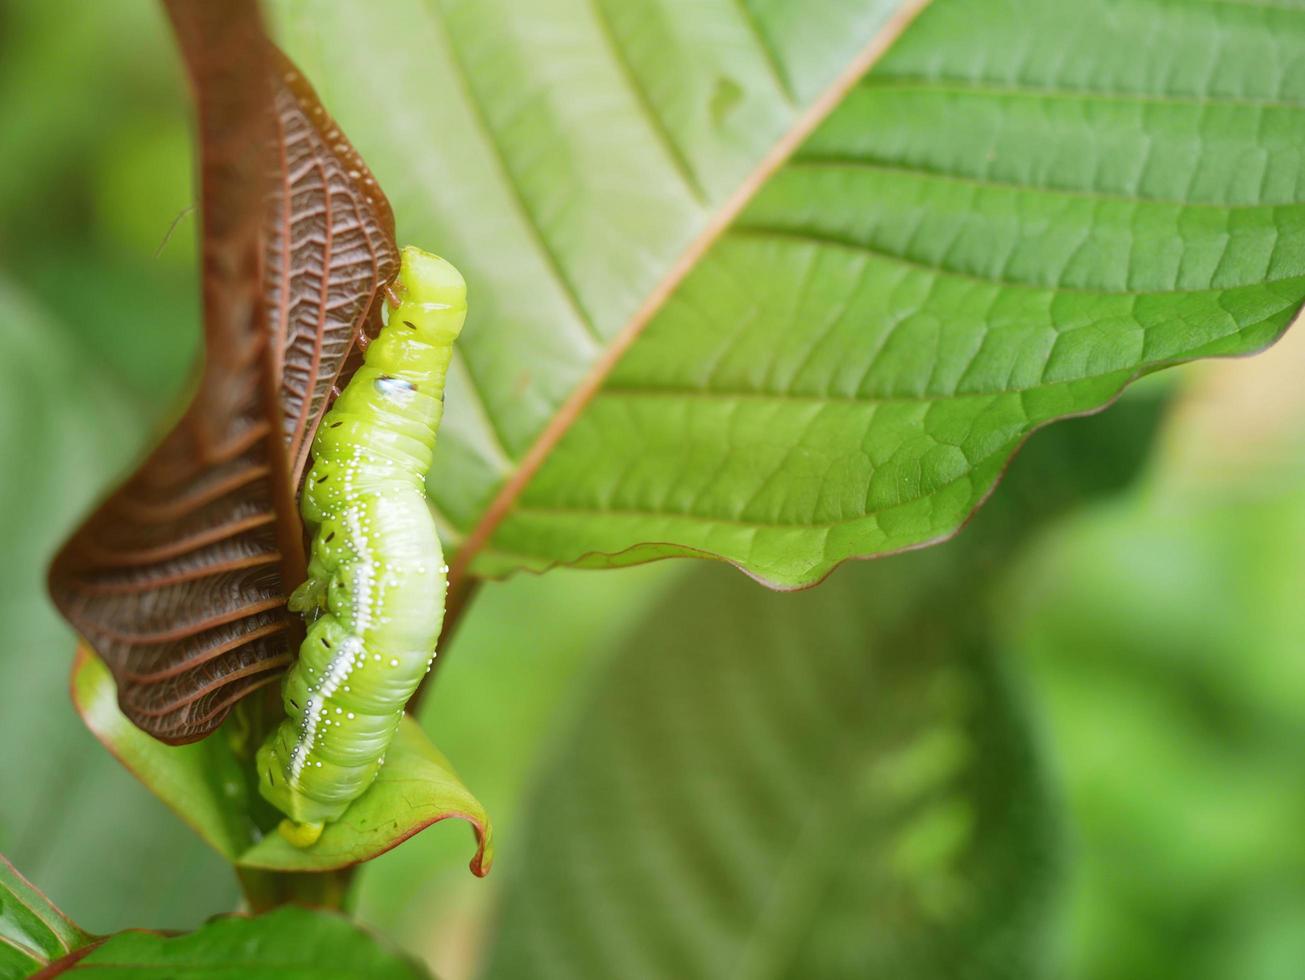 grandes lagartas verdes. nas folhas, as pragas comem e danificam. foto